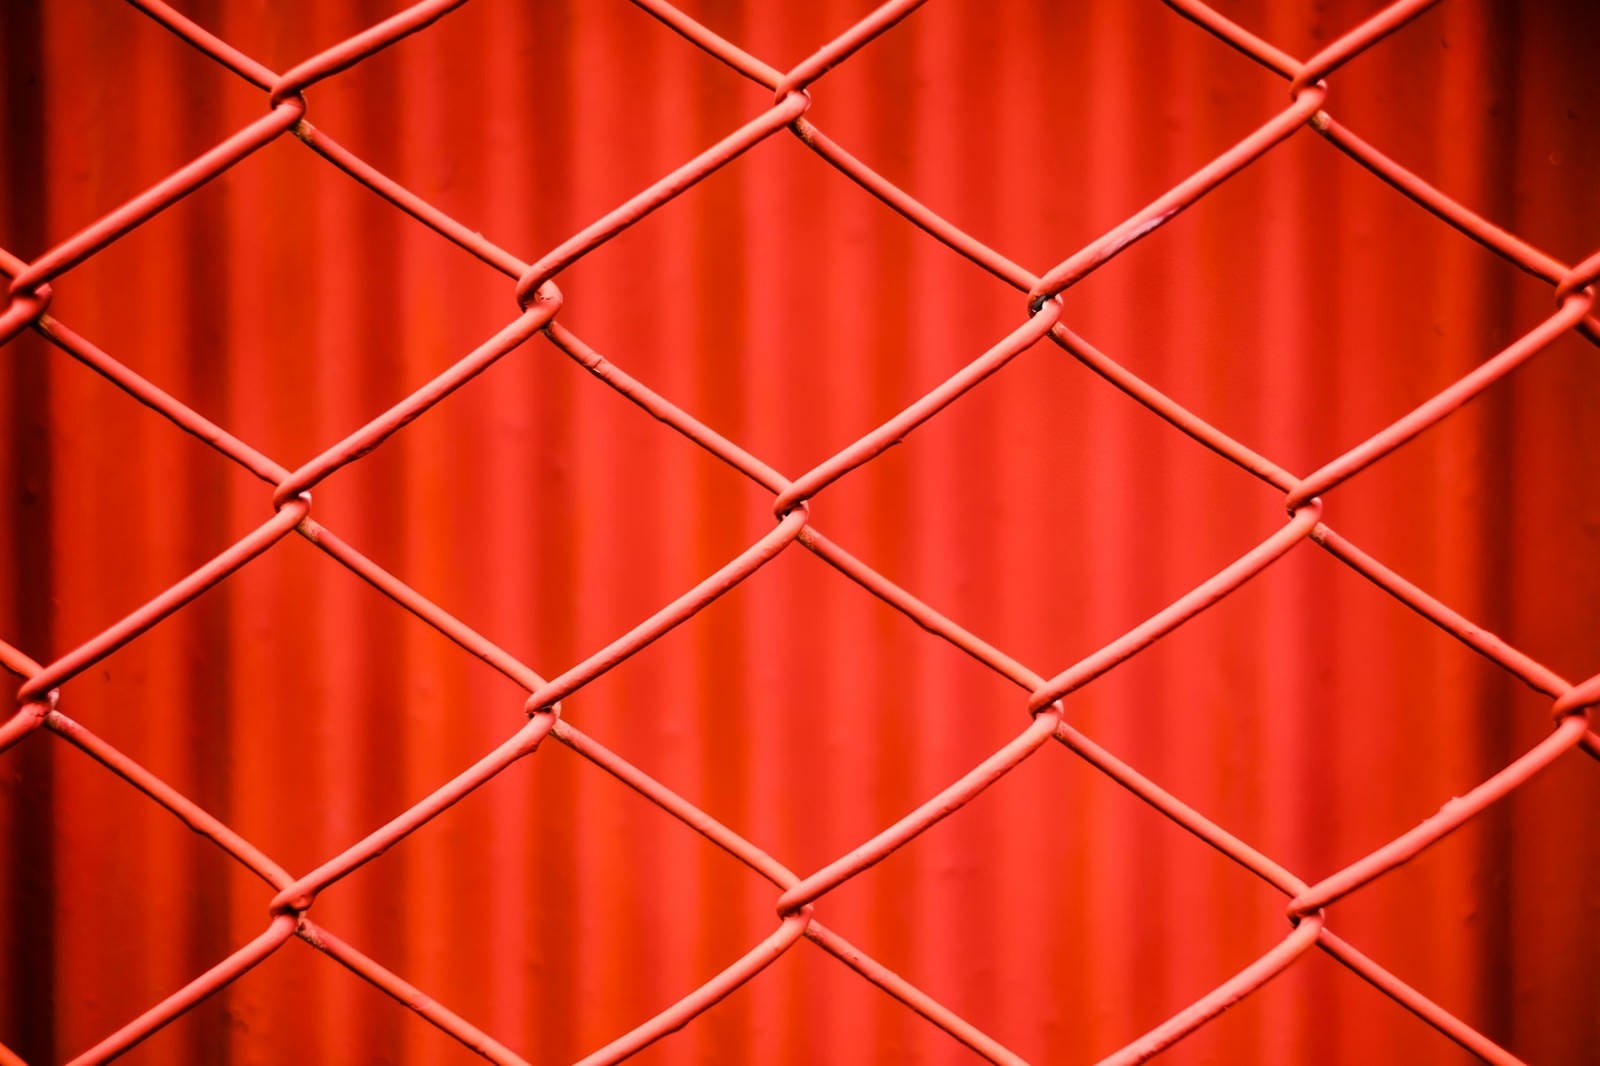 「赤いネットフェンス」の写真